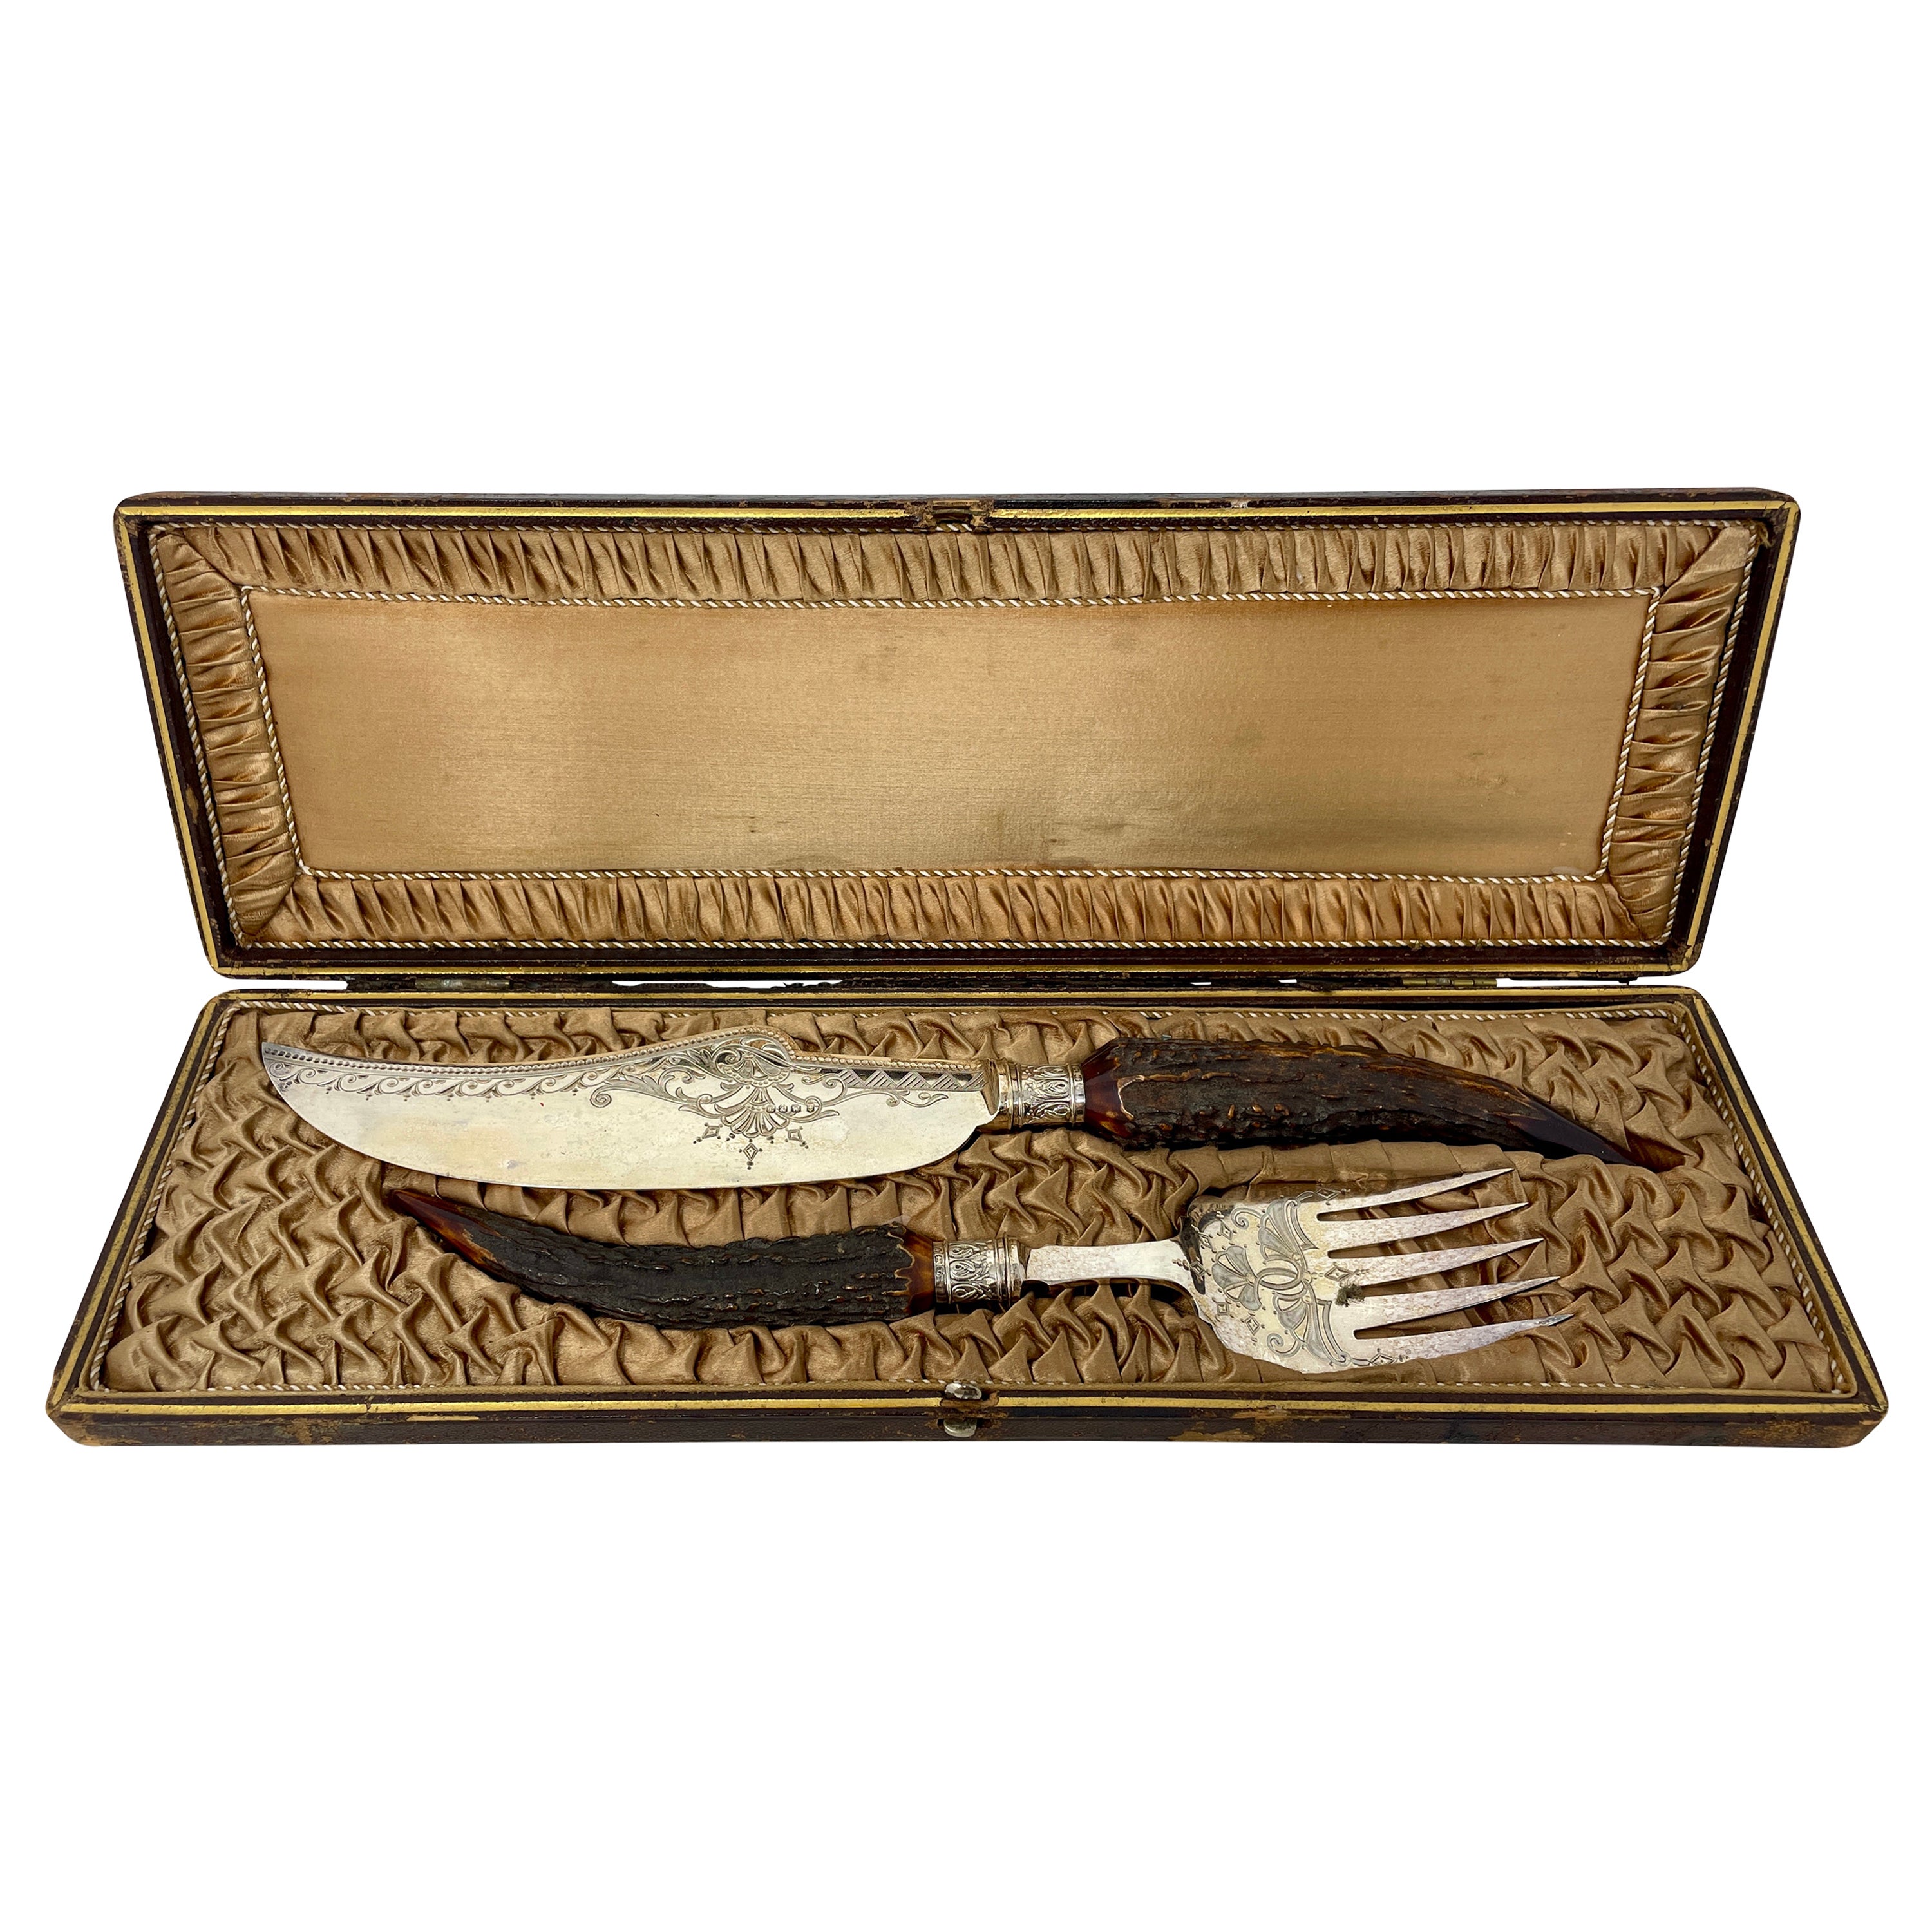 Fourchettes et couteaux à couteaux anciens en métal argenté Sheffield avec poignées en corne, vers 1880